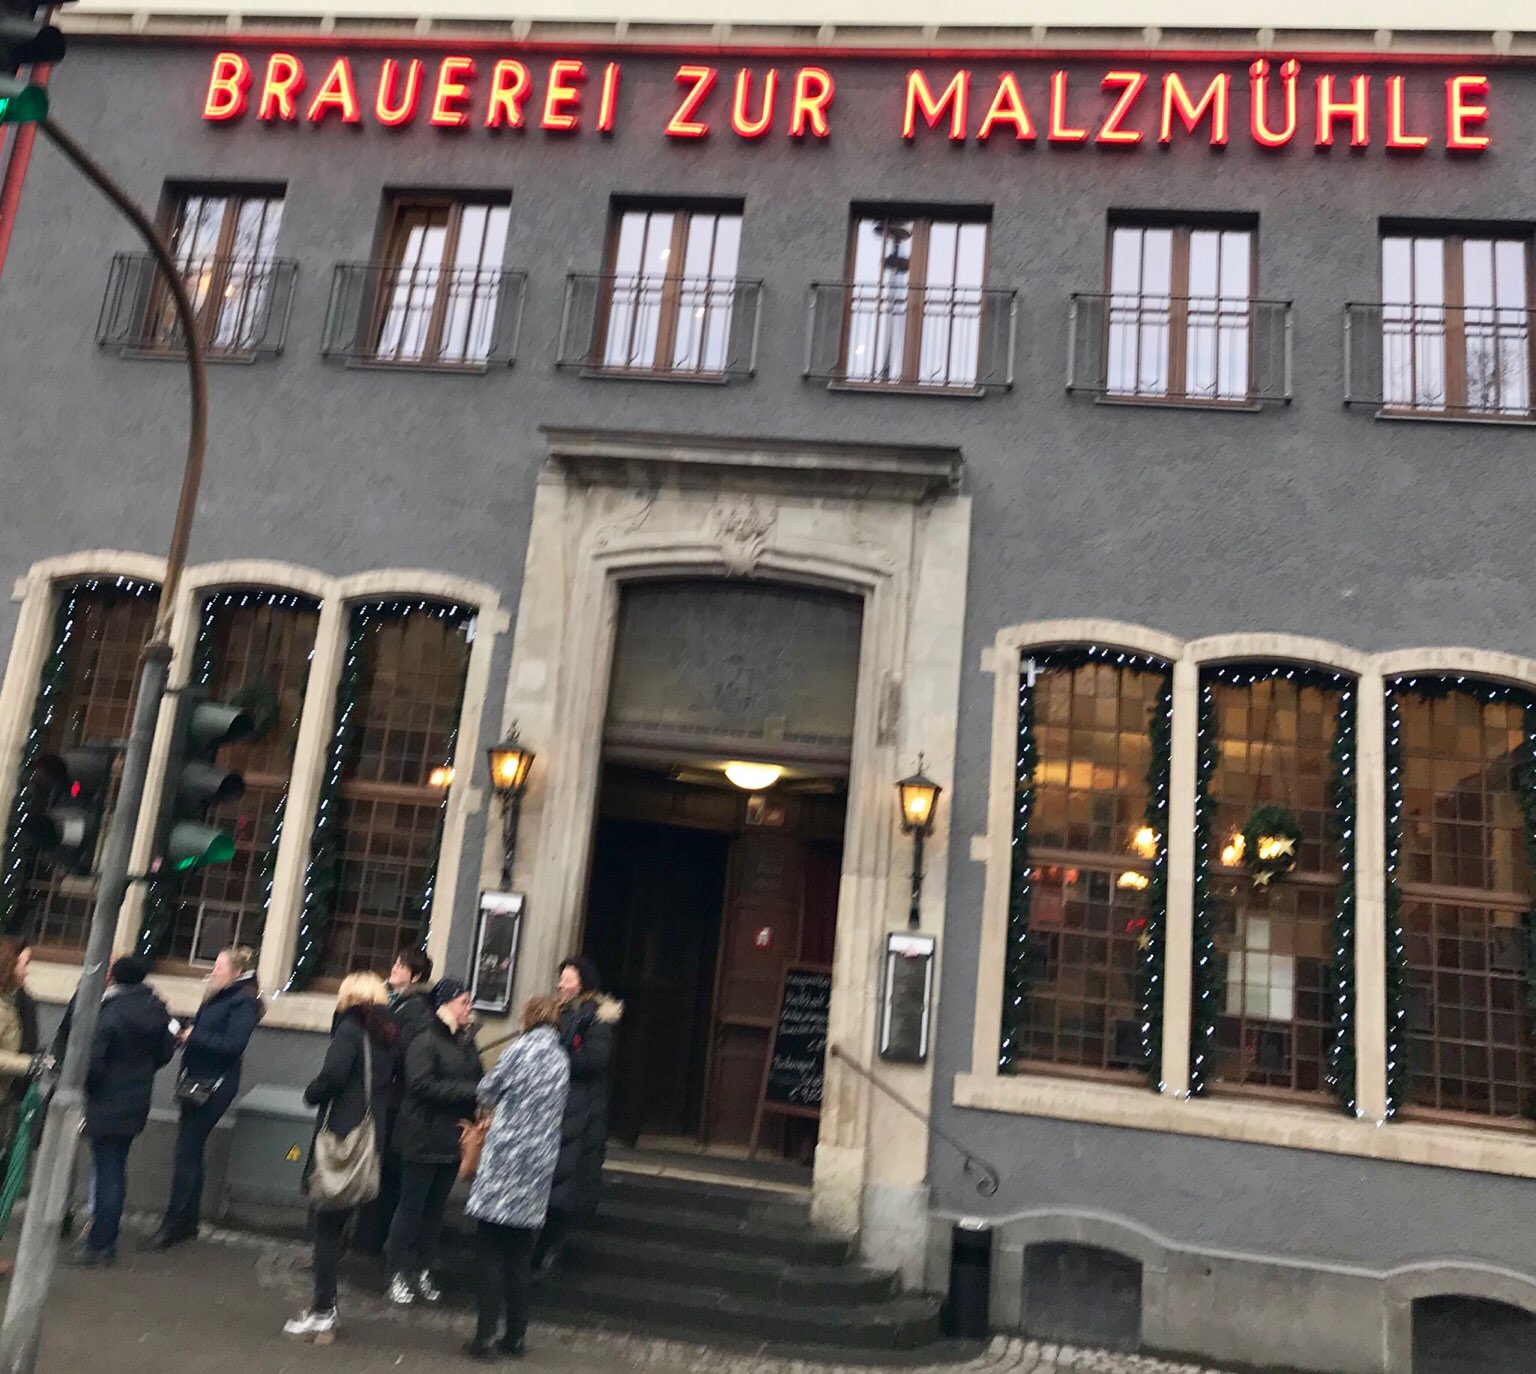 Brauerei zur Malzmühle in Köln - Heumarkt